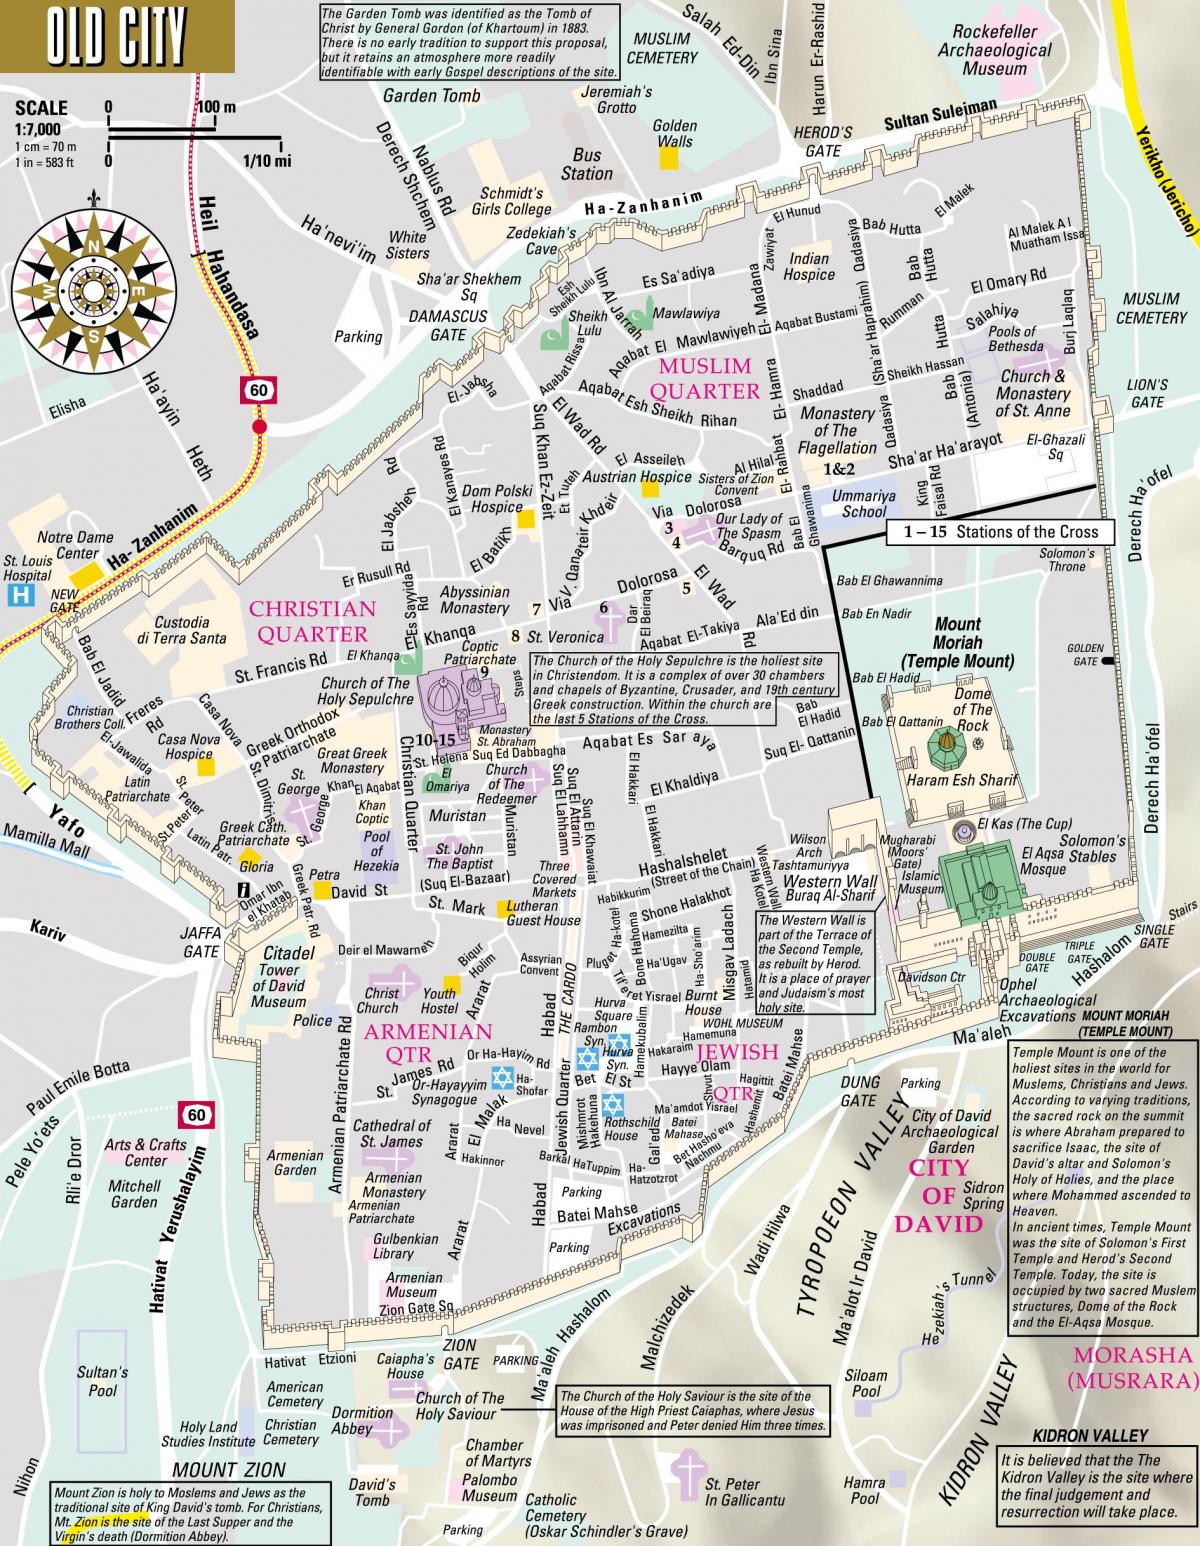 Mappa del centro di Gerusalemme